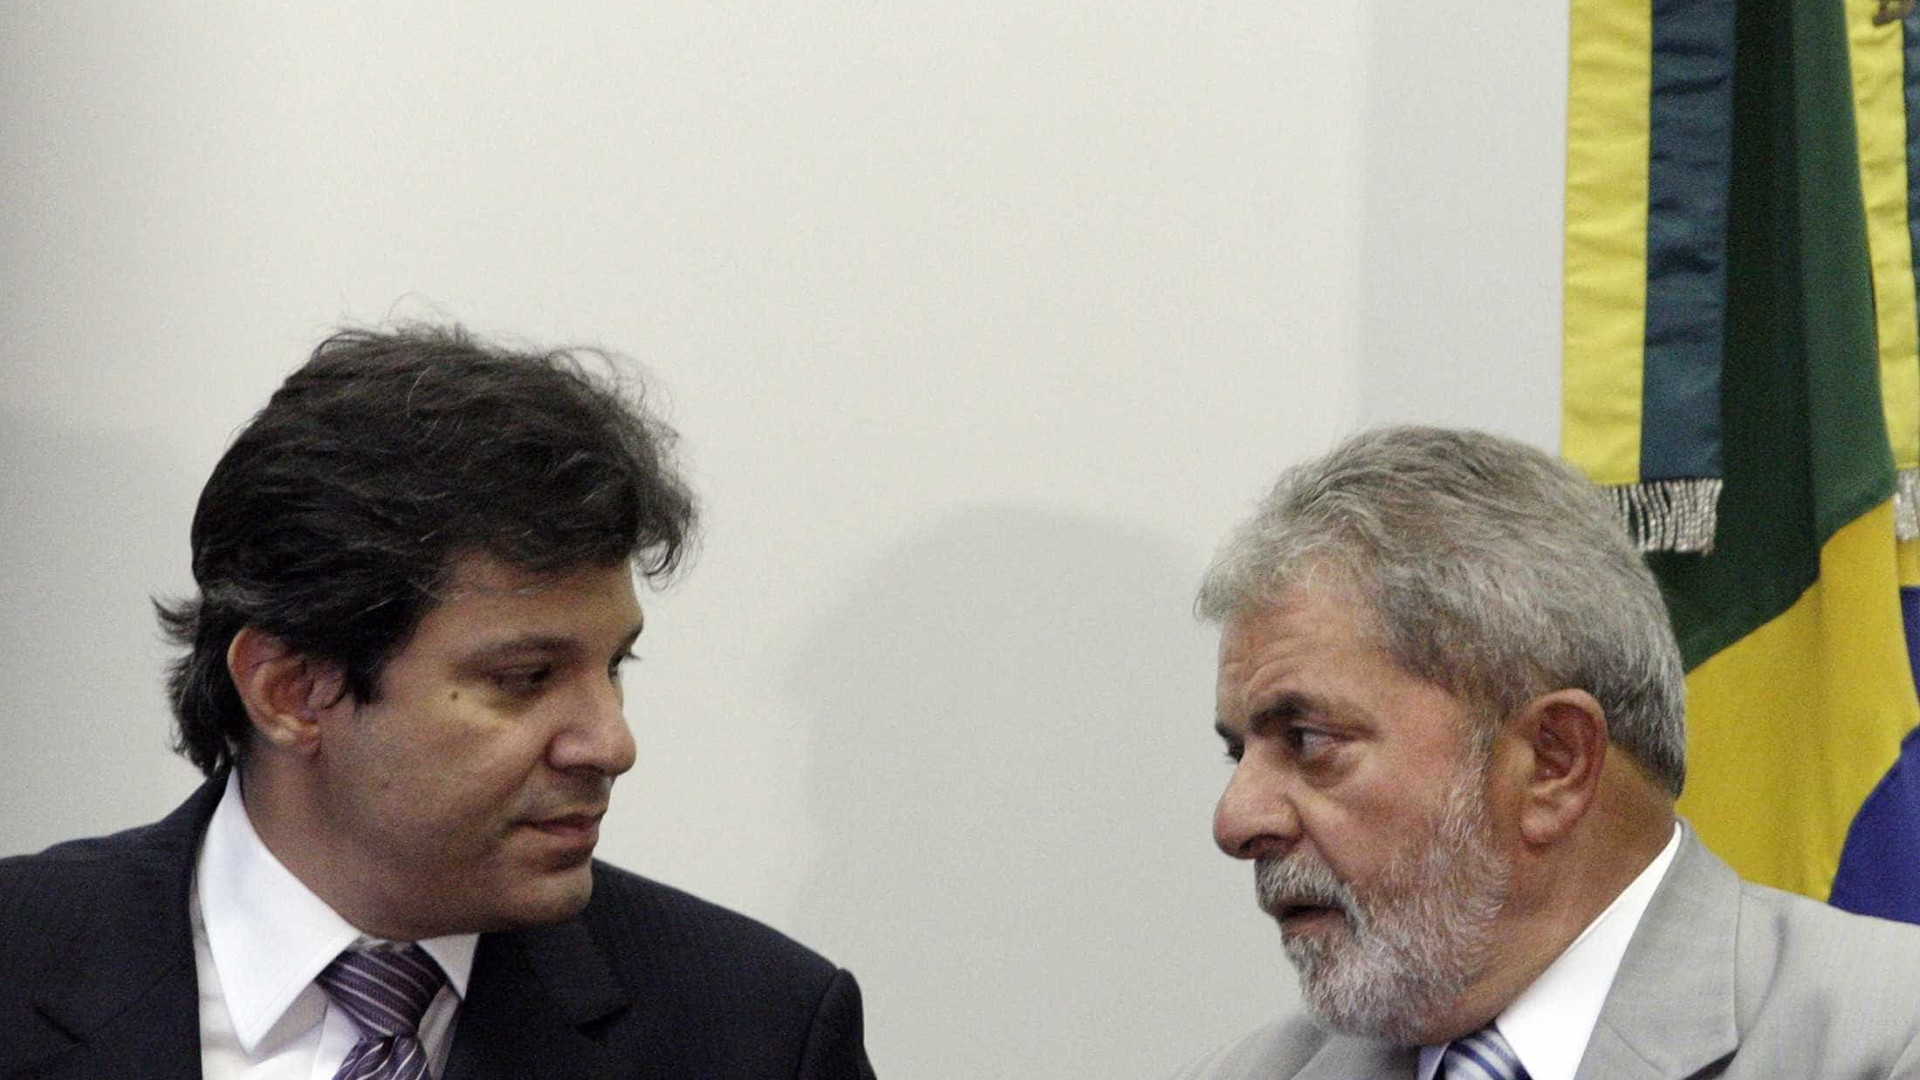 Viagra deve mudar de cor para homenagear 'tesão' de Lula, diz Haddad